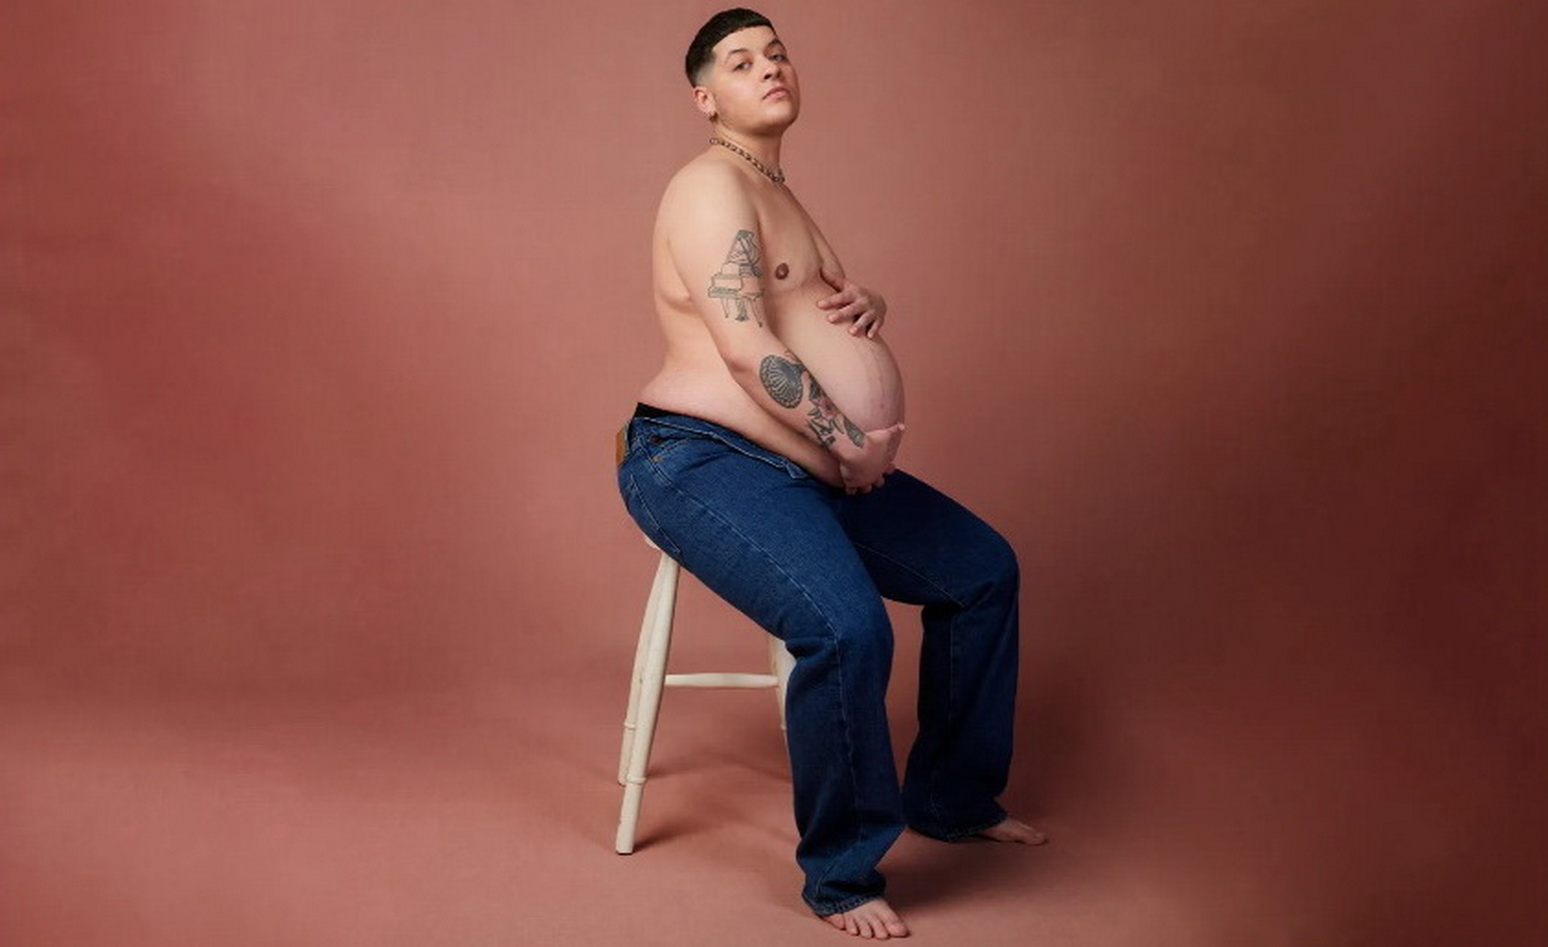 Журнал Glamour разместил на обложке беременного трансмужчину